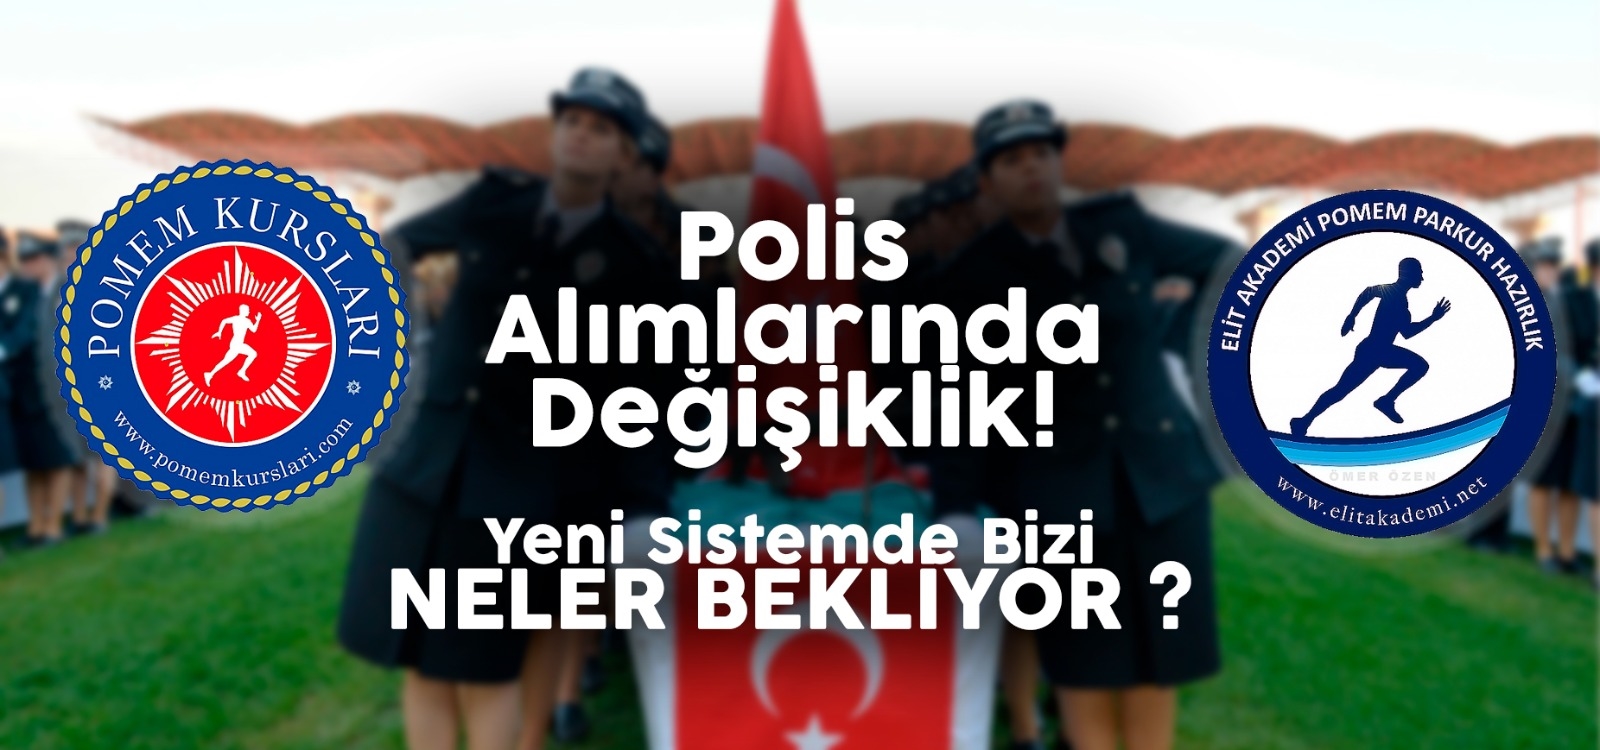  POLİS ALIMLARINDA DEĞİŞİKLİK